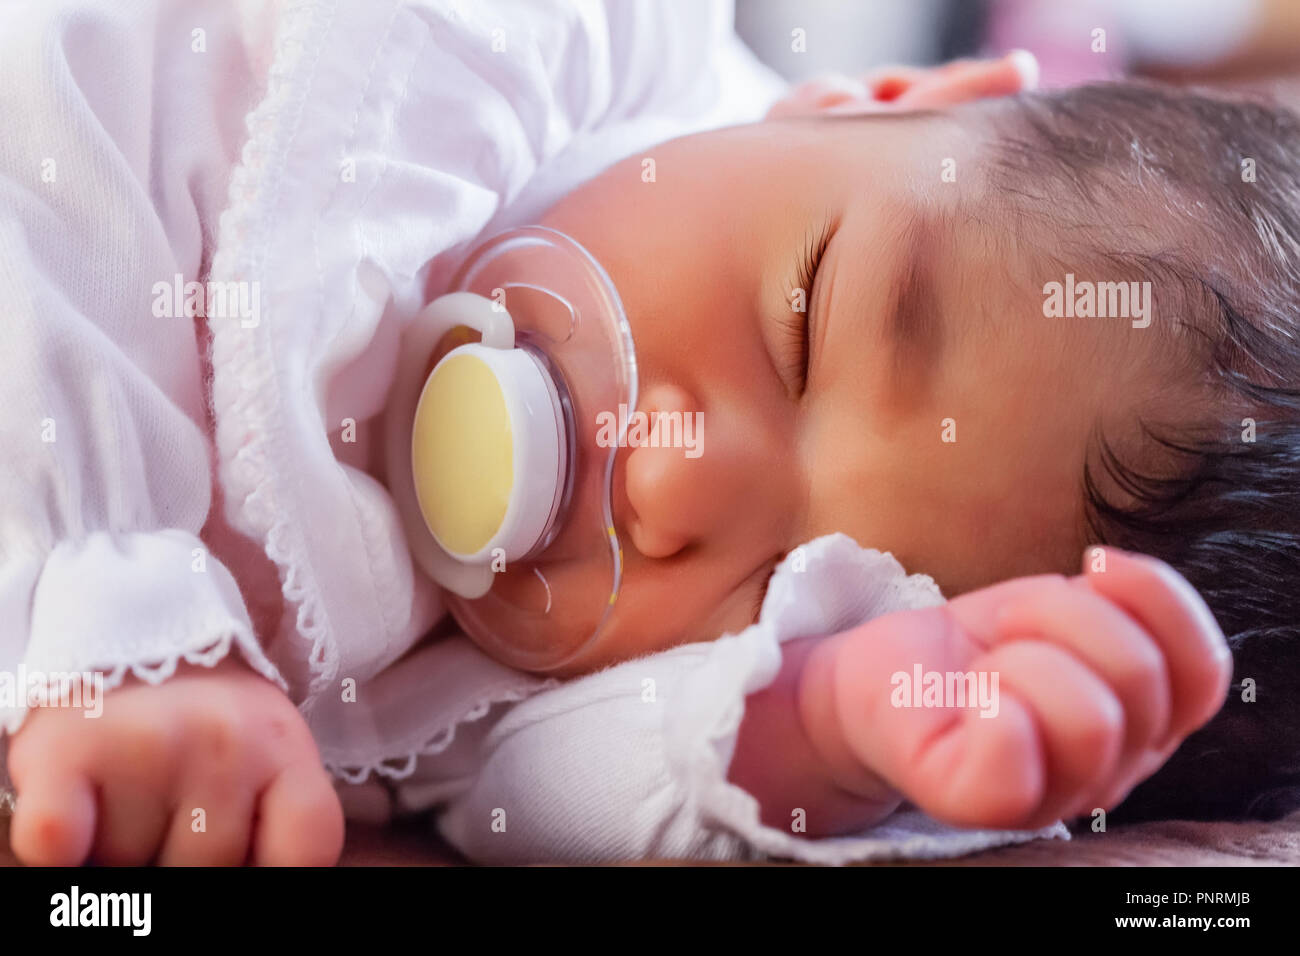 Close up portrait of a cute deux semaines Naissance bebe Fille portant des vêtements en tricot rose tendre, dormir paisiblement avec une tétine, sucette ou factice aka Banque D'Images